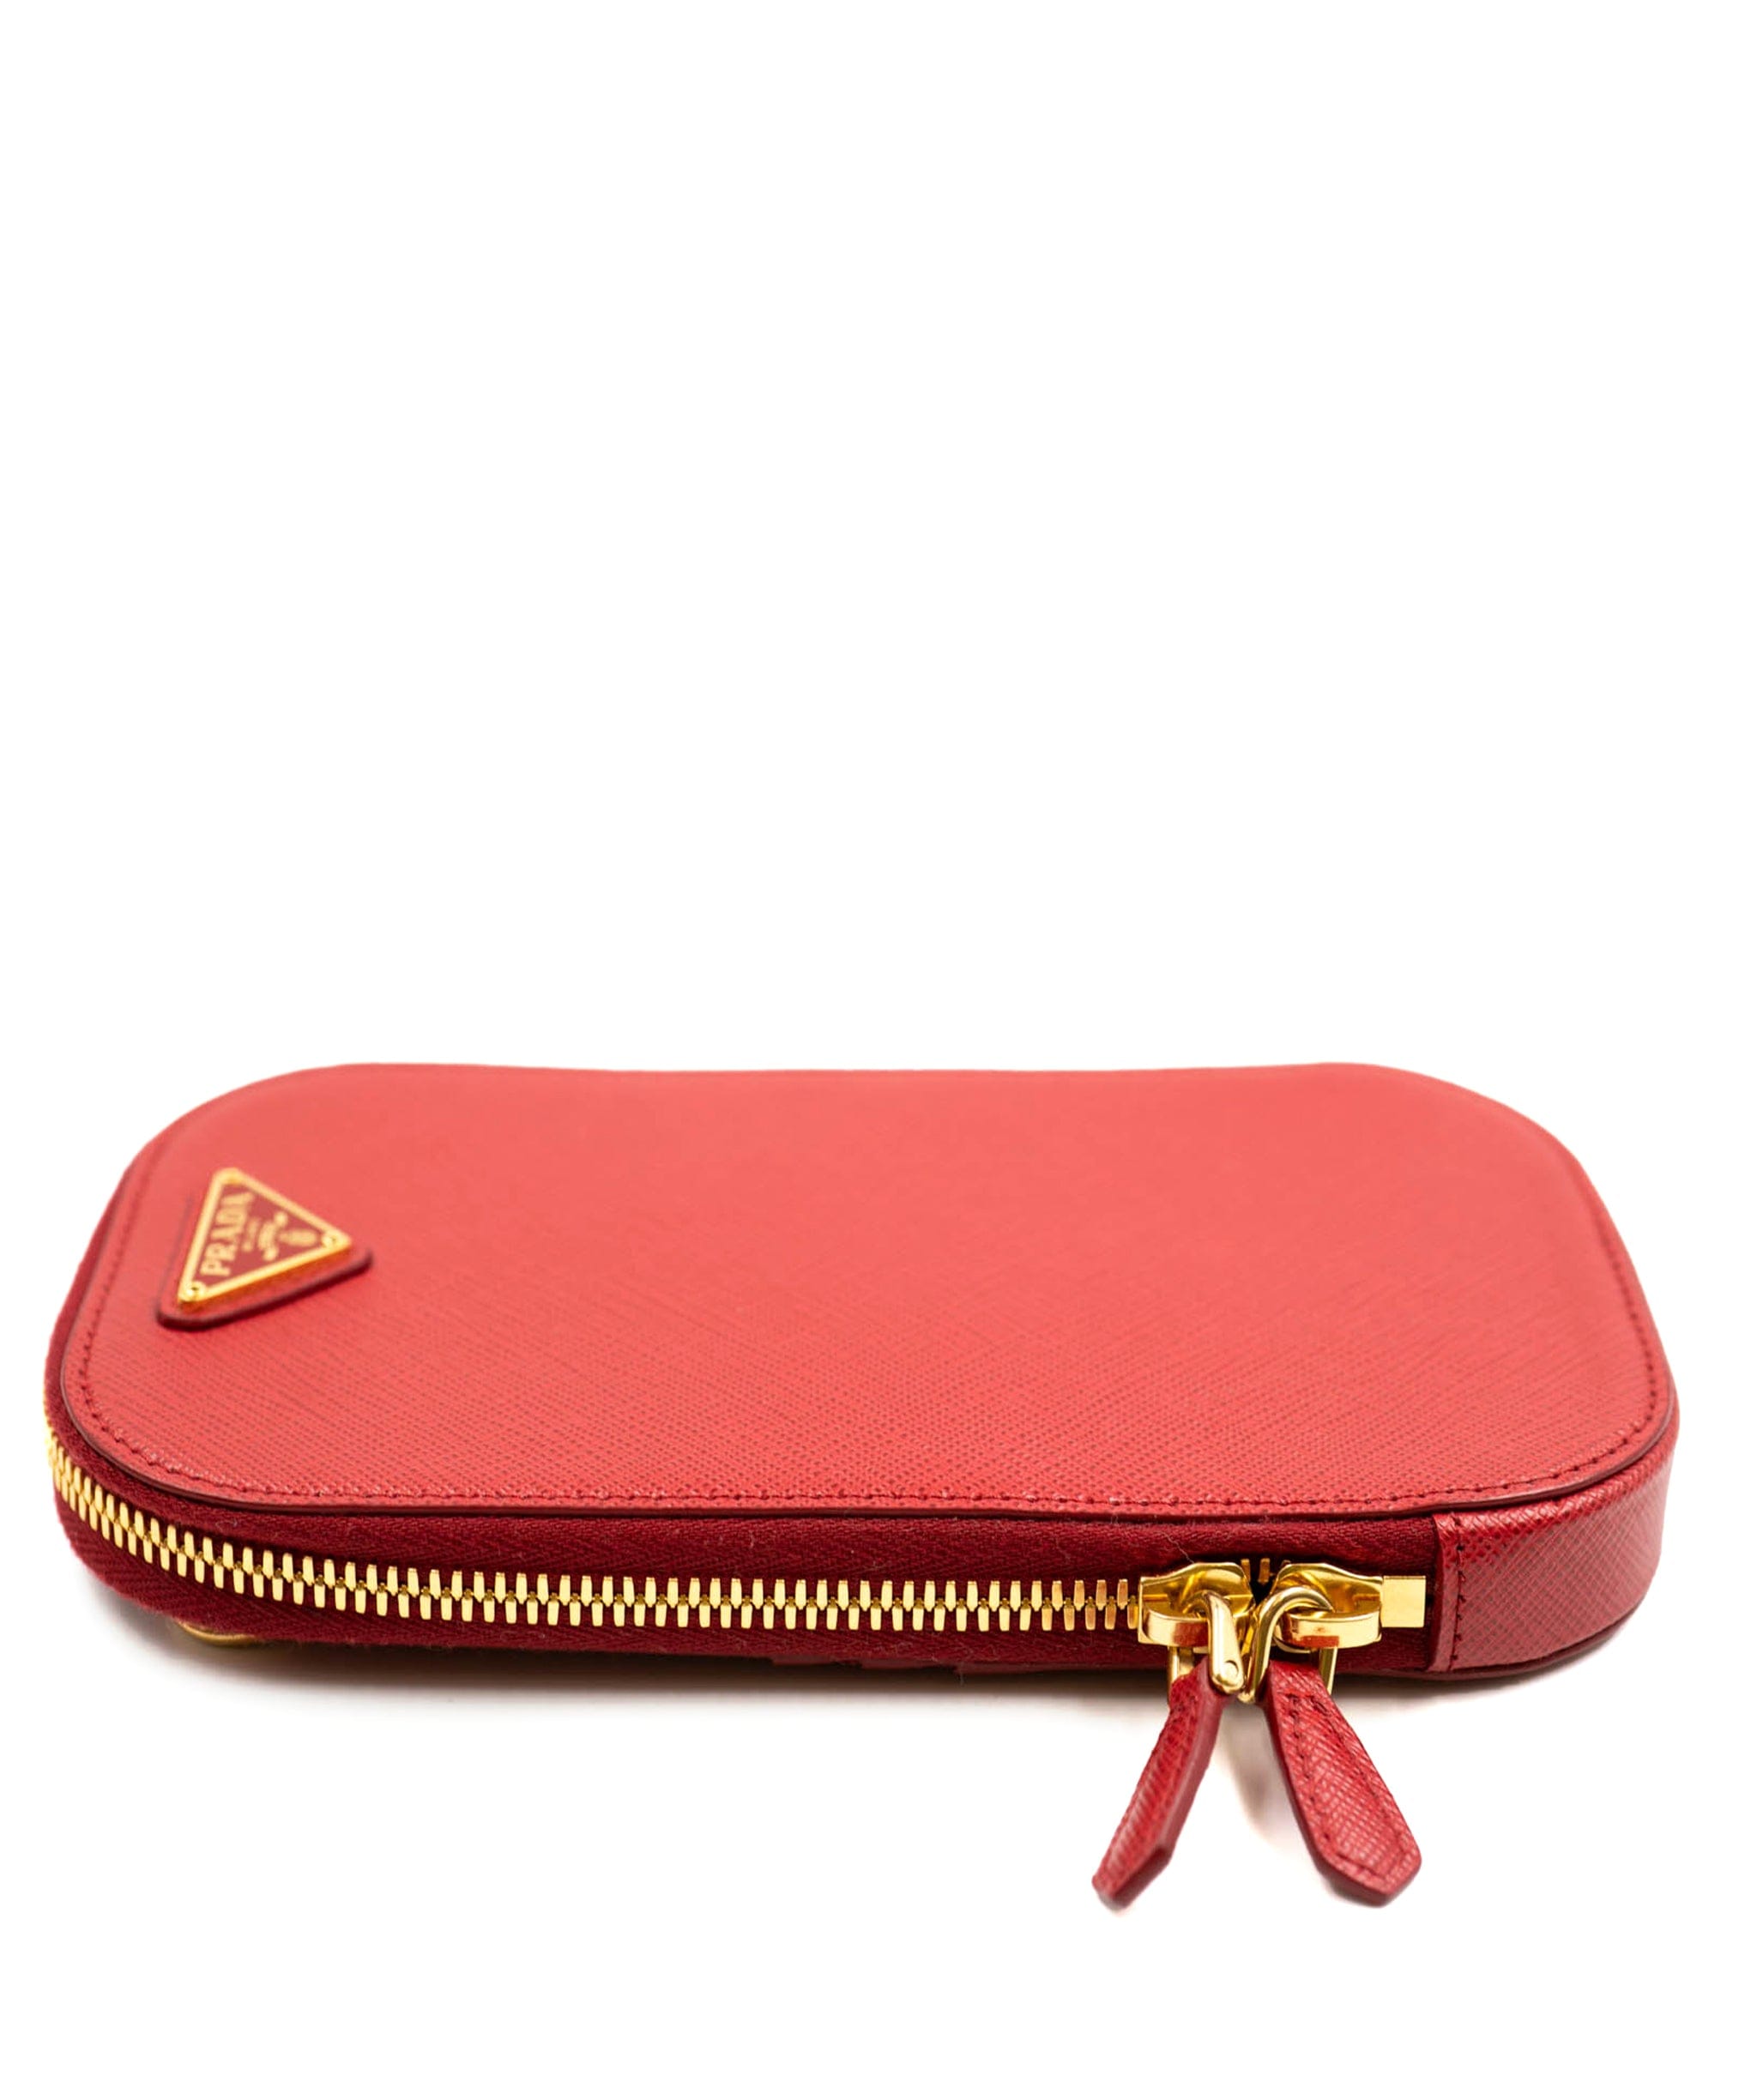 Prada Prada Red Leather Saffiano Mini-bag Crossbody Bag - AWL4158